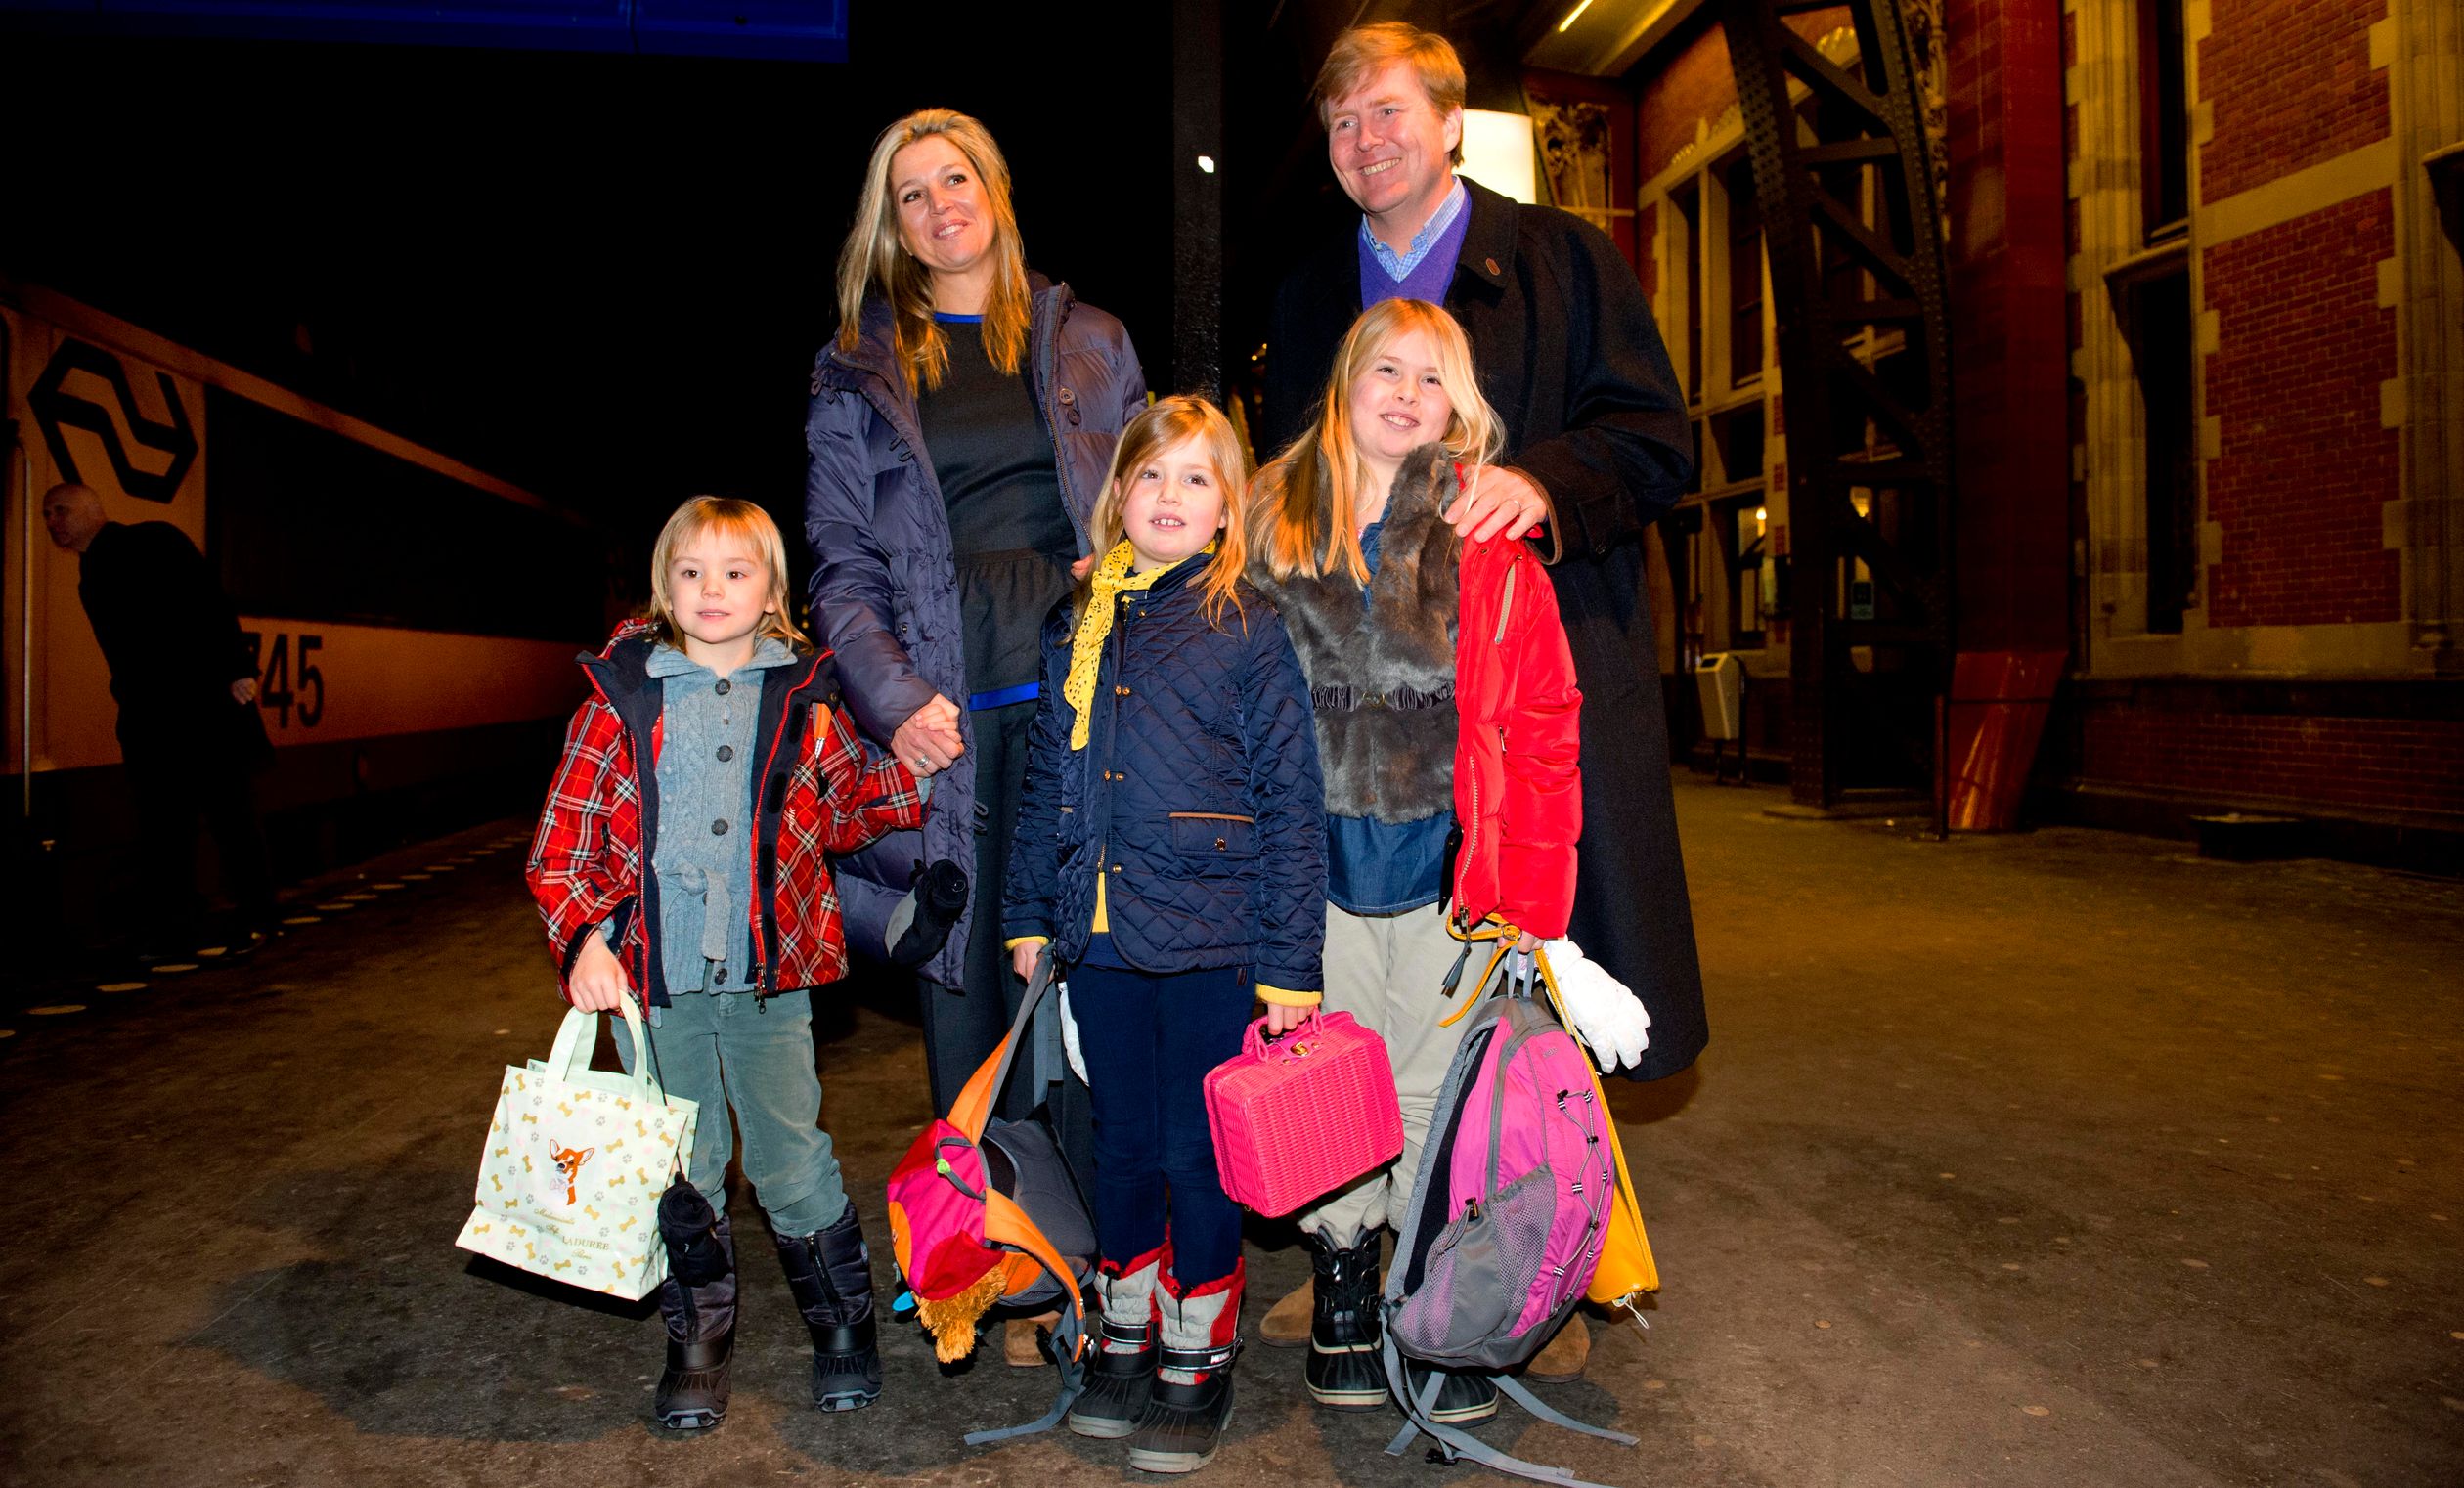 2013: Het gezin van Willem-Alexander arriveert op station Amsterdam Centraal.